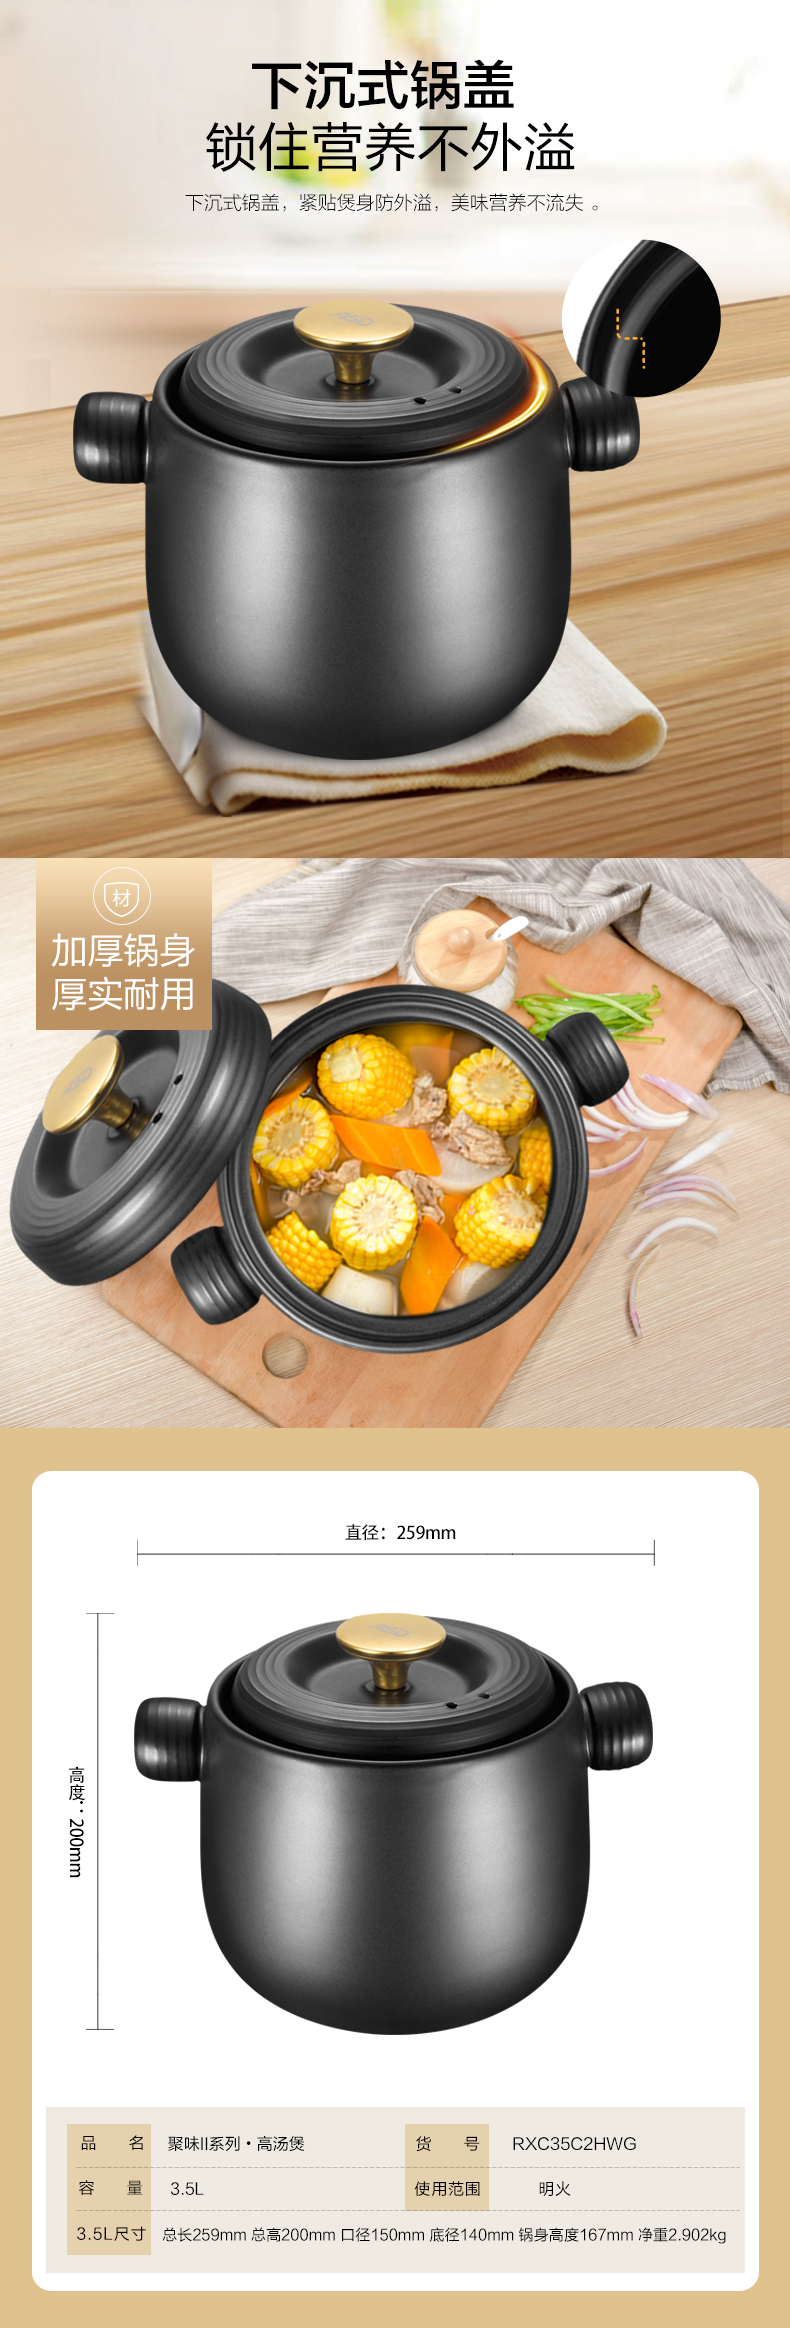 爱仕达陶瓷煲耐高温不外溢养生煲汤煲陶瓷砂锅煲聚味II系列陶瓷煲1.6L